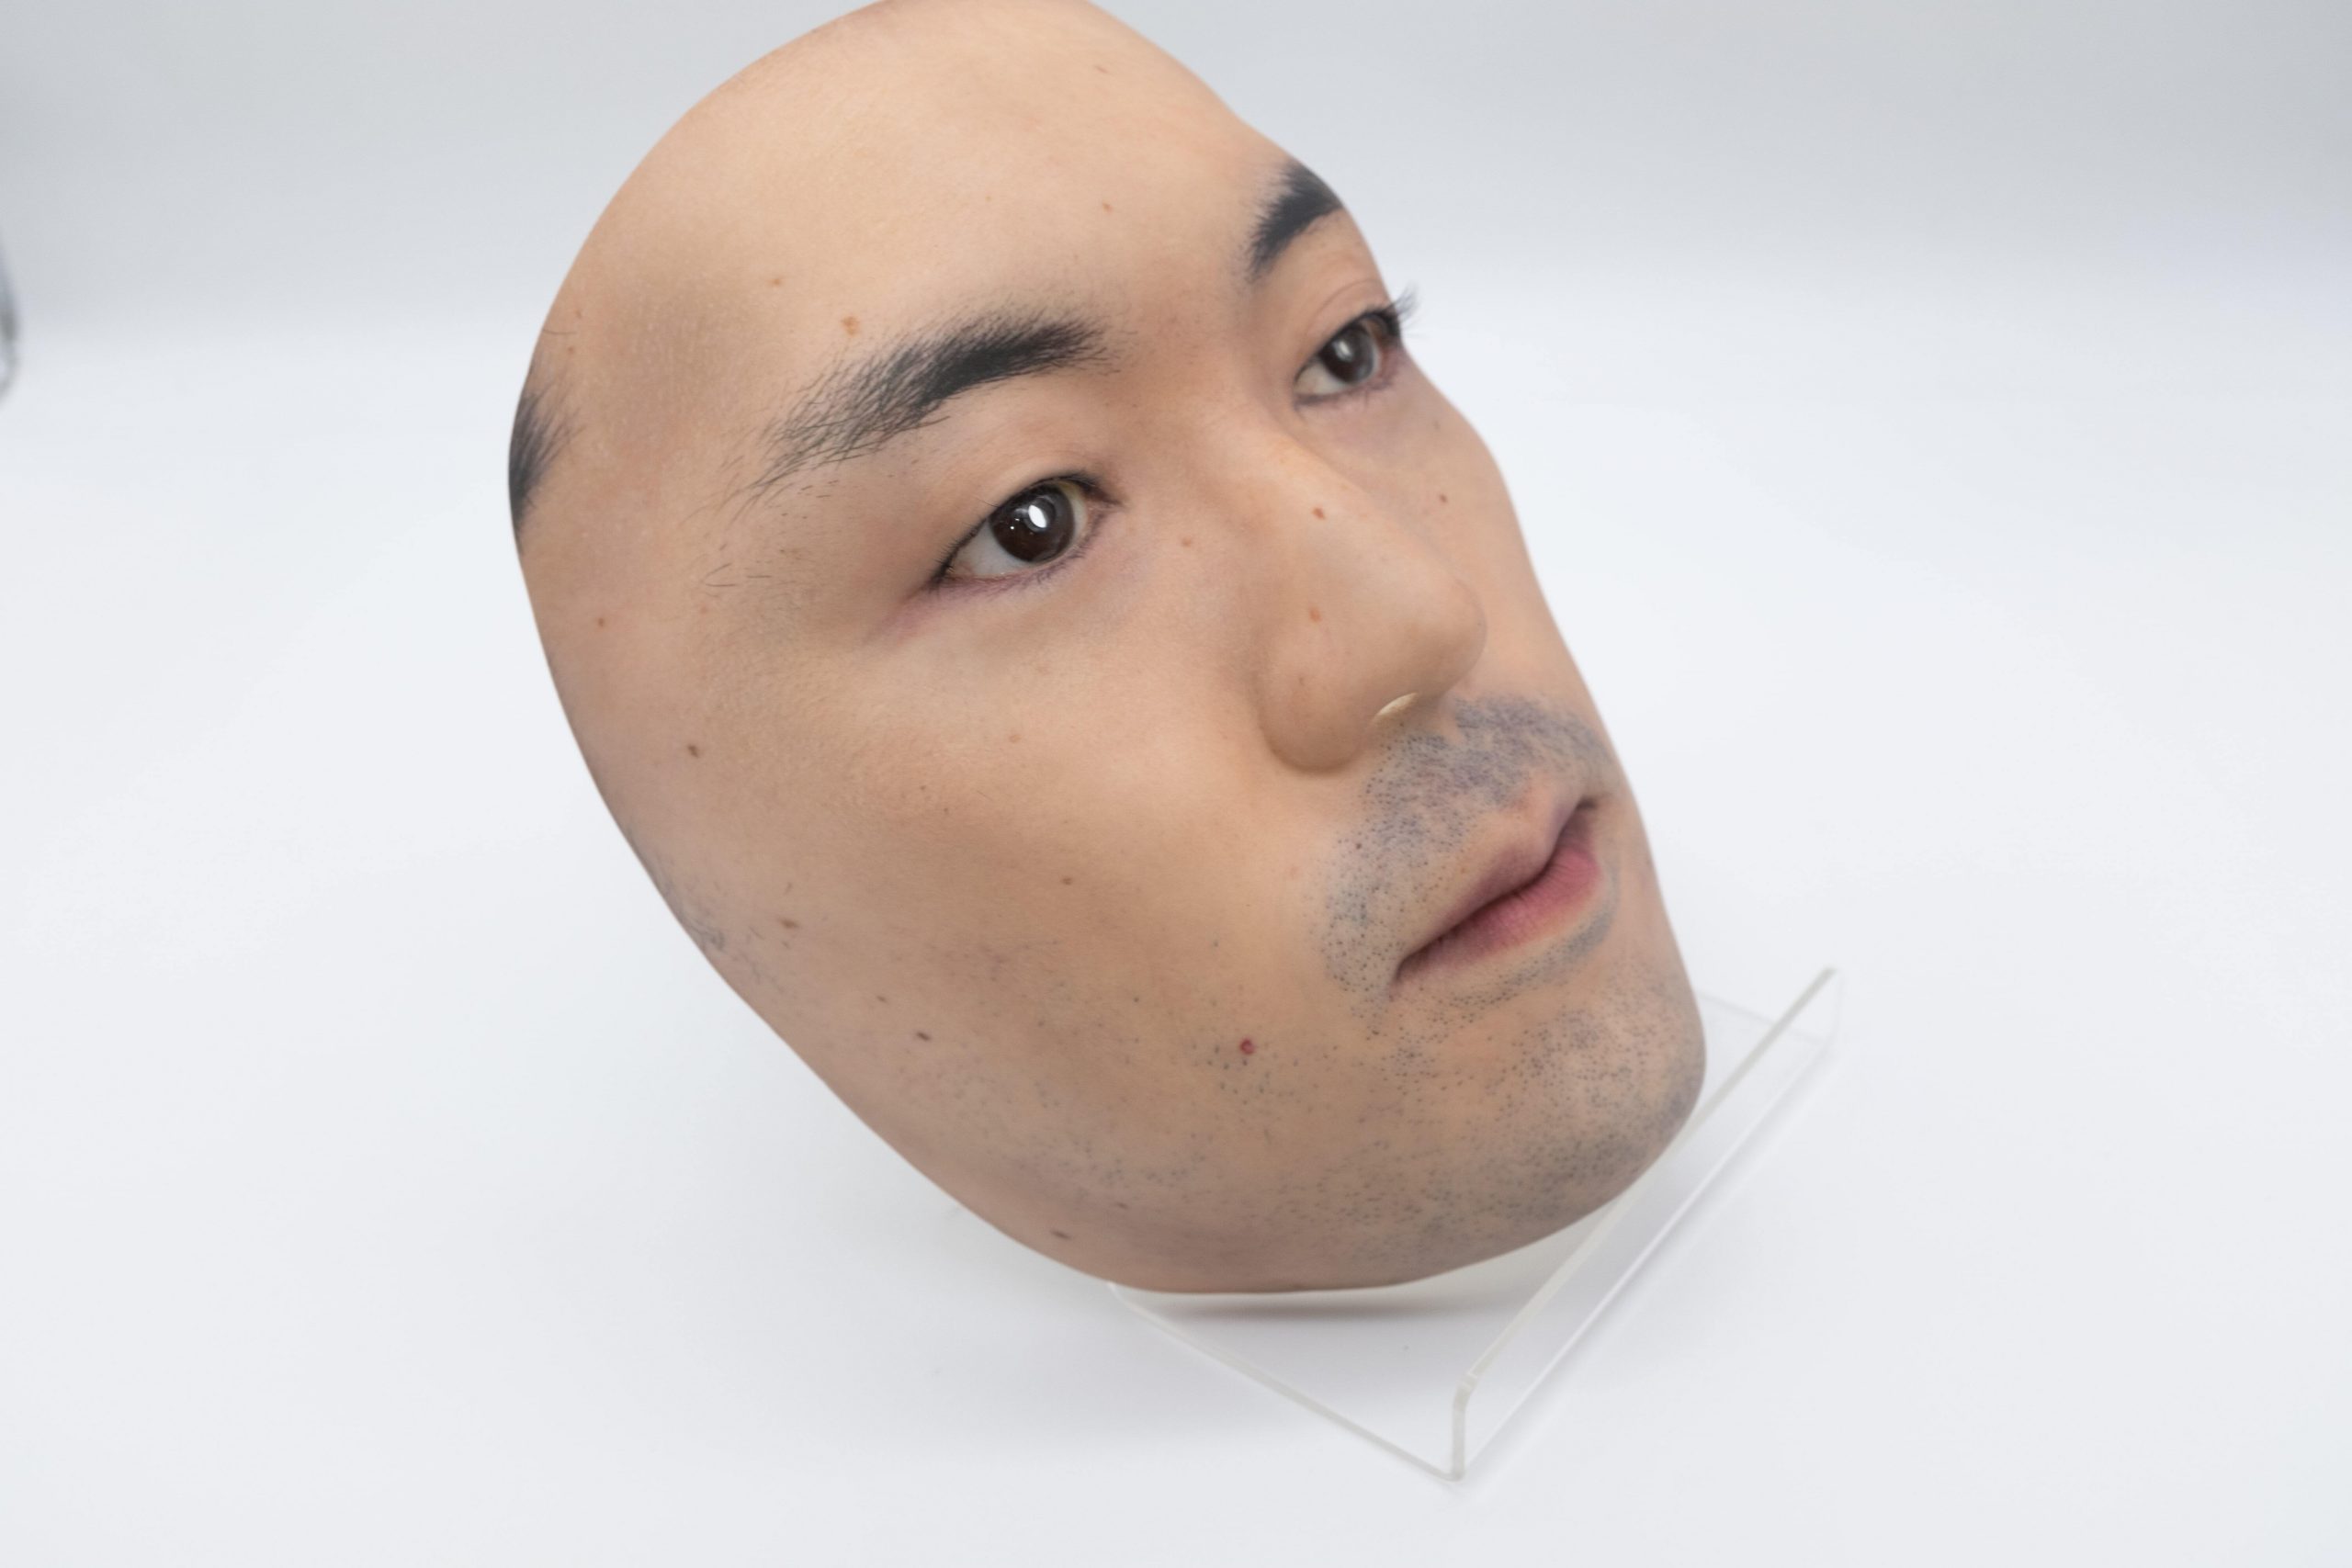 Empresa japonesa quer “comprar o seu rosto” e transformá-lo em uma máscara hiper realista